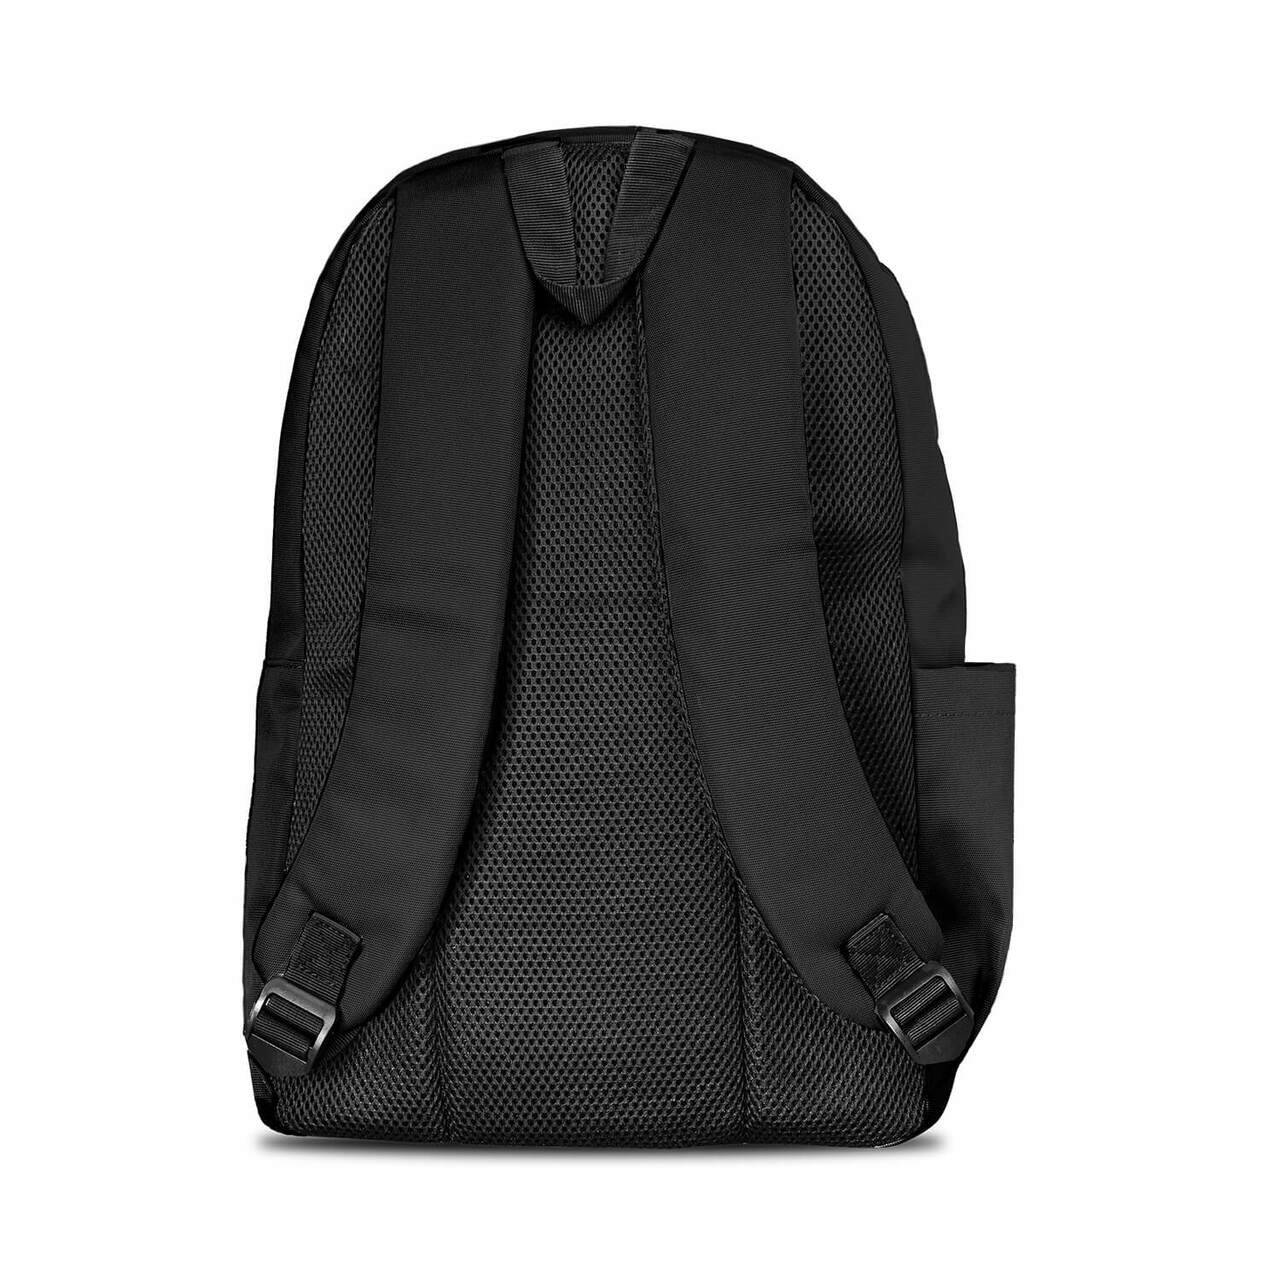 Oklahoma Sooners Campus Laptop Backpack- Black